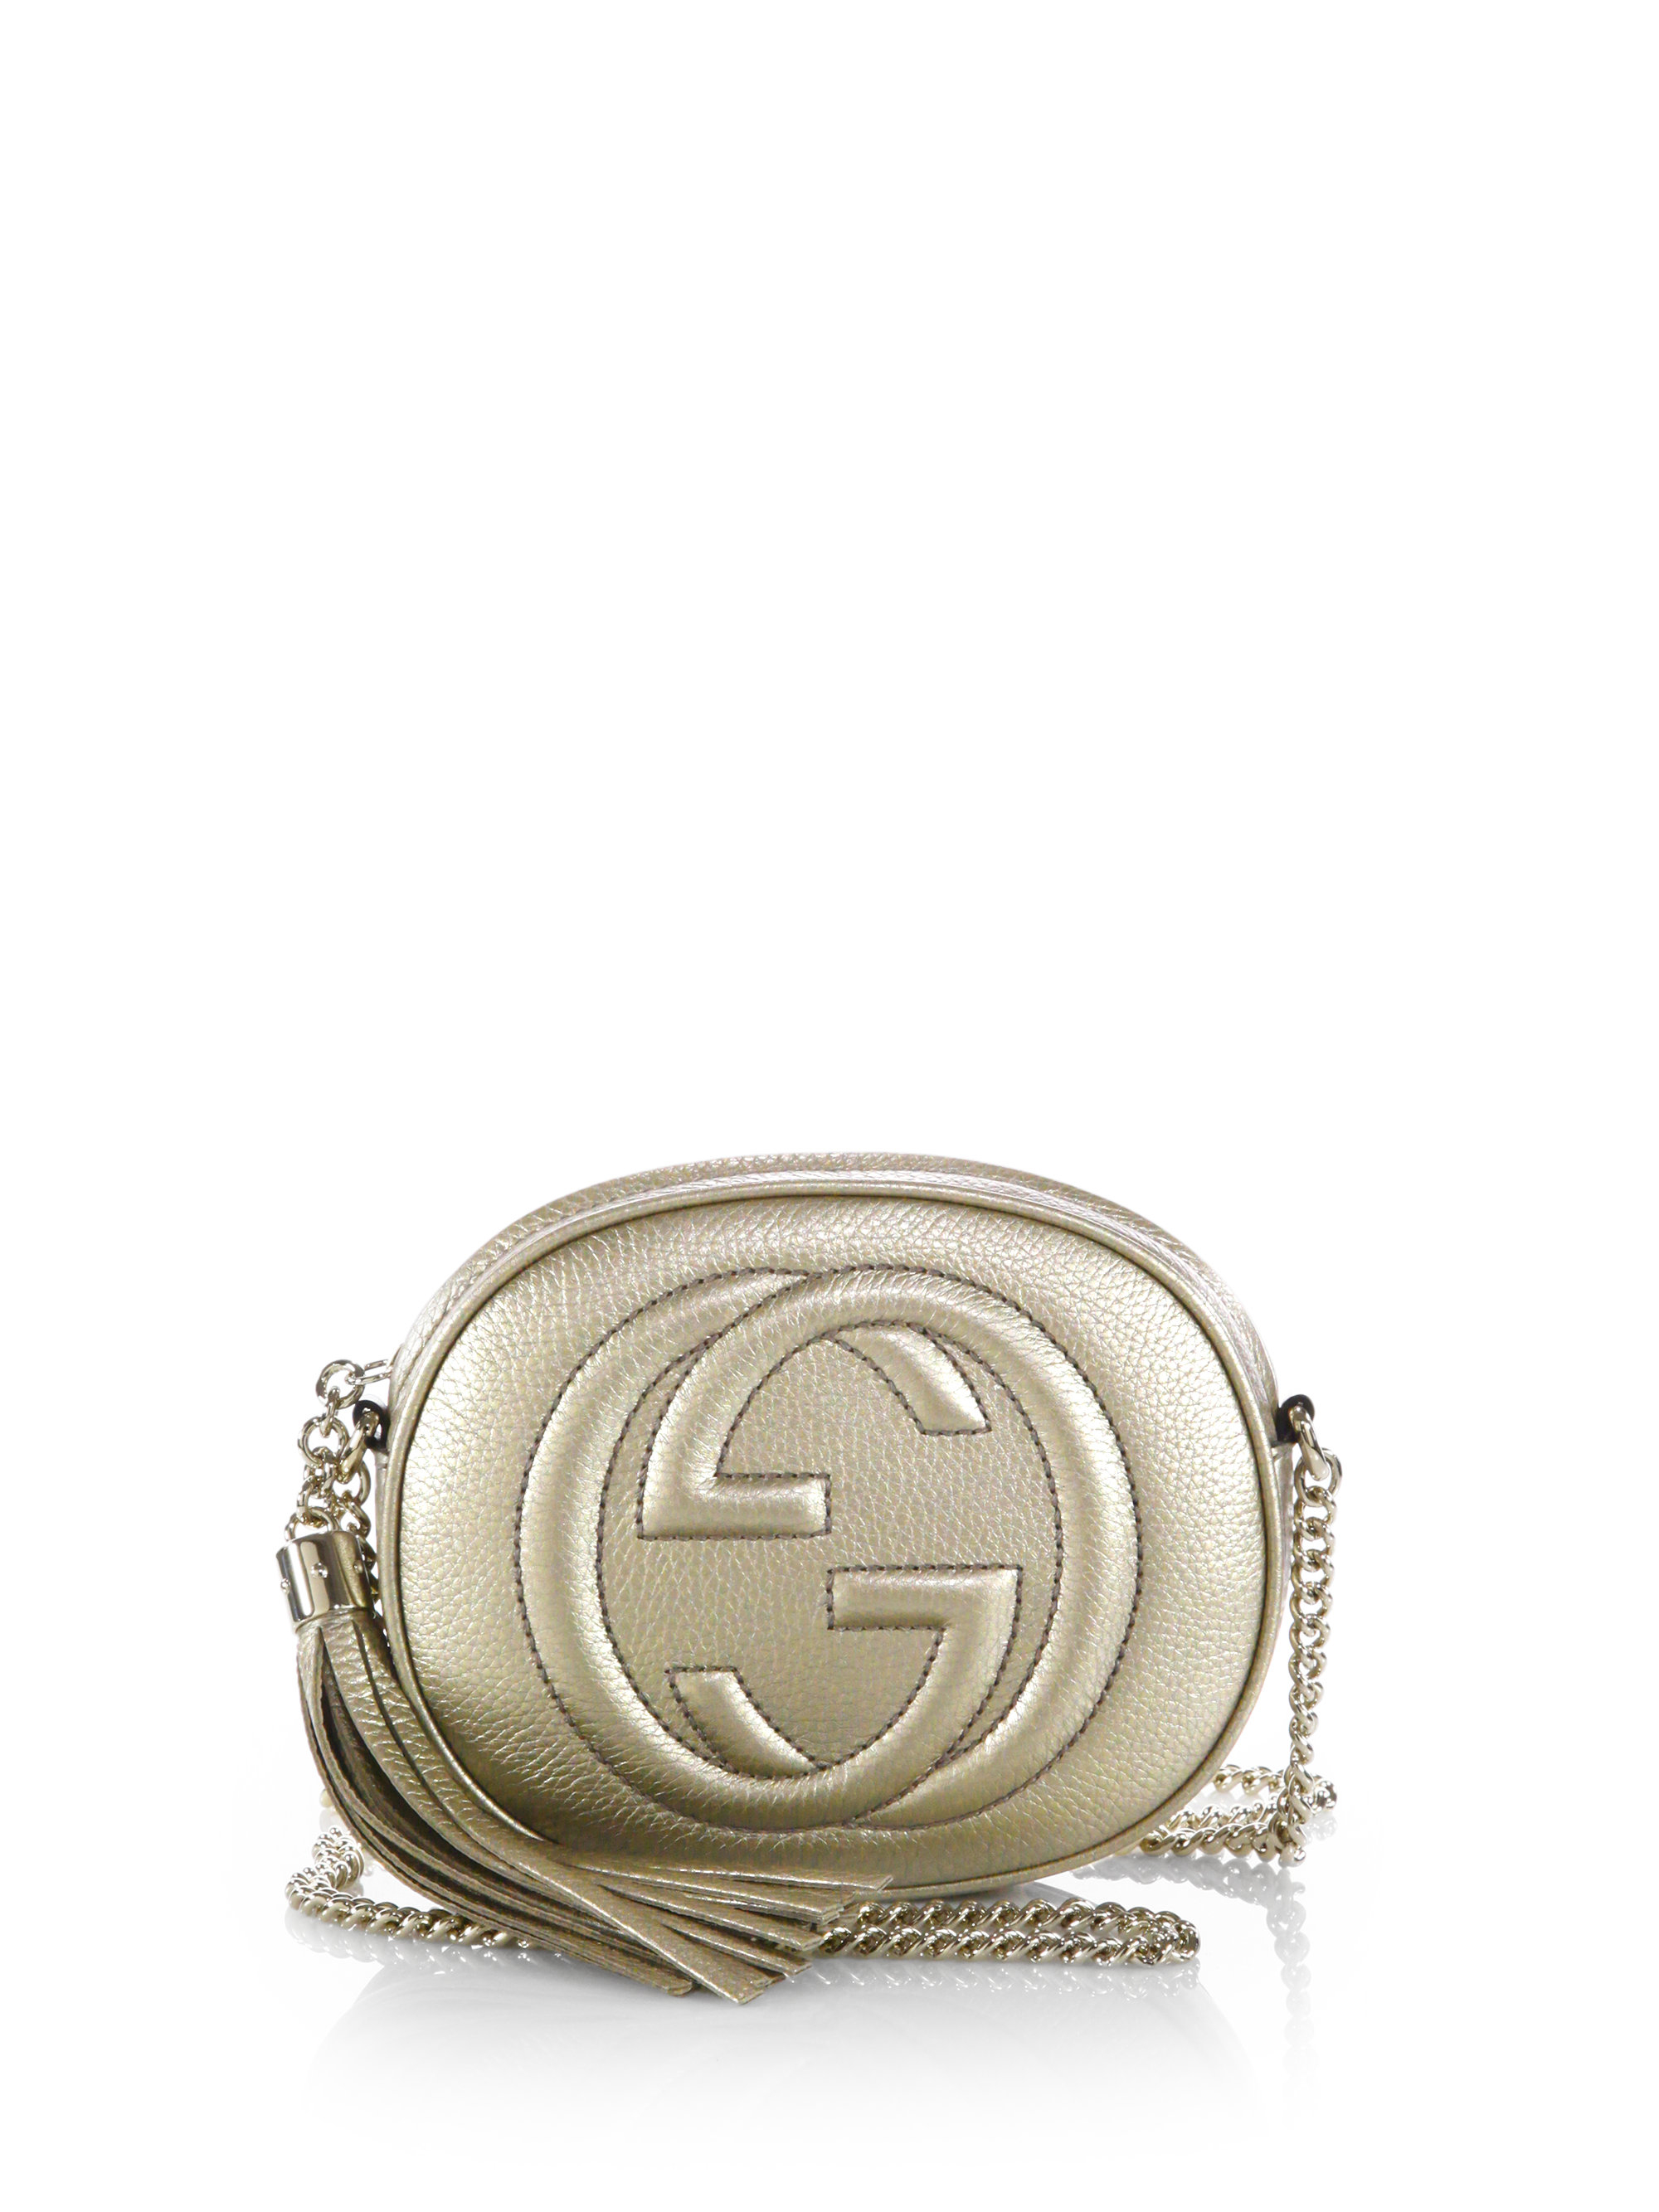 Lyst - Gucci Soho Metallic Leather Mini Chain Bag in Metallic